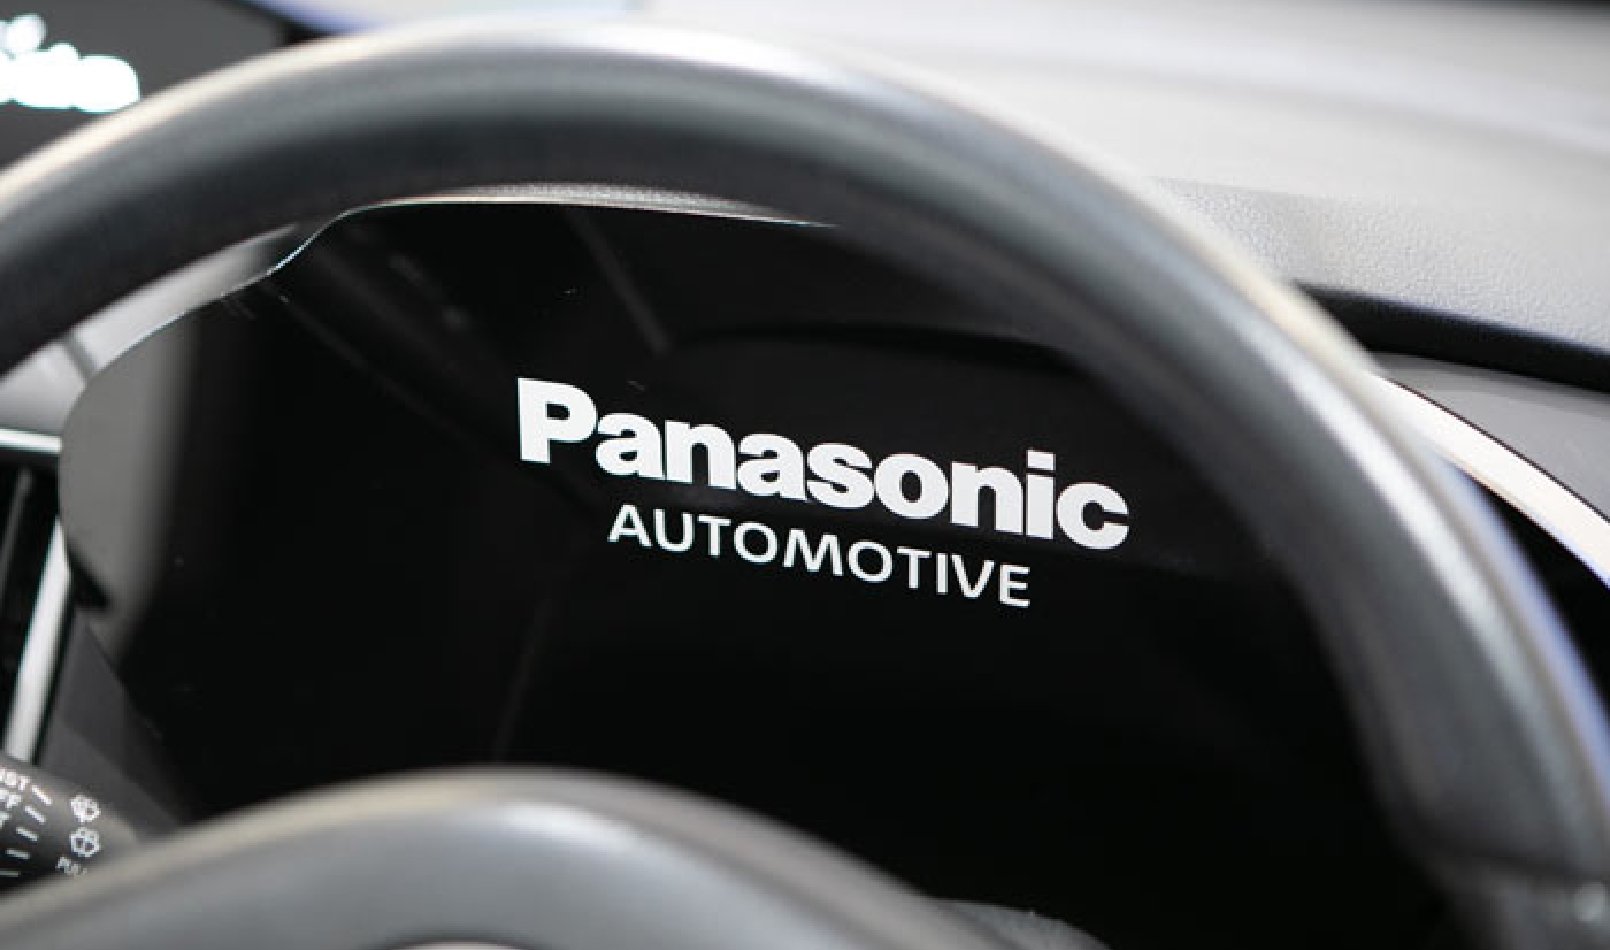 ドライバーディスプレイにPanasonic AUTOMOTIVEと表示されている画像